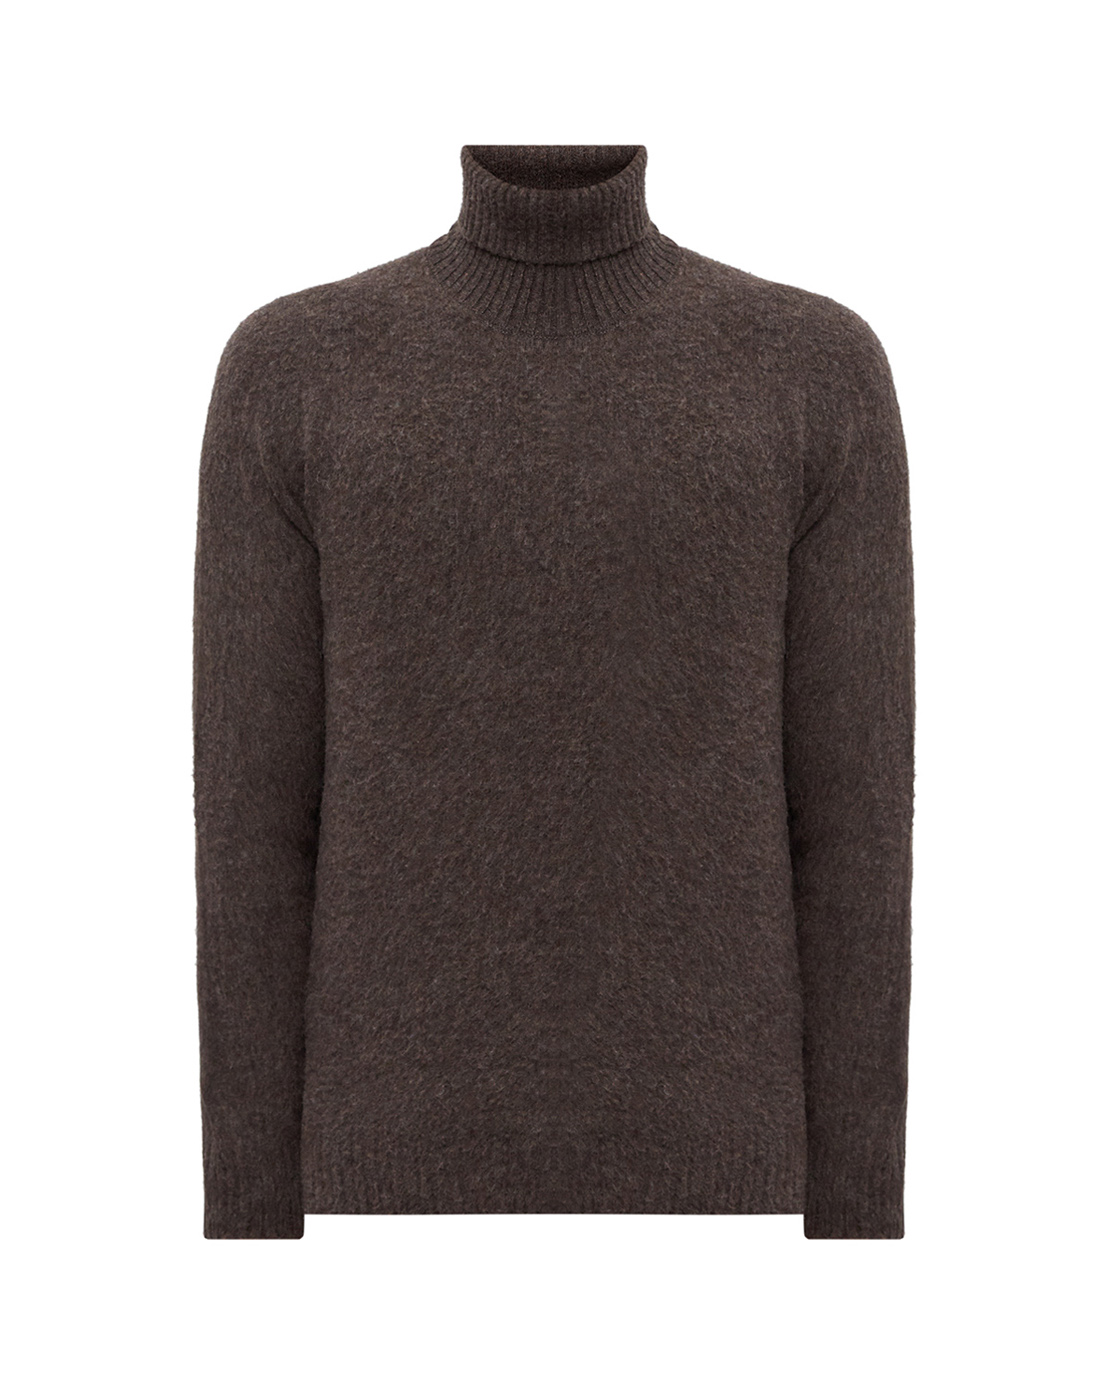 Мужской коричневый шерстяной свитер Barba S1880124596/184-1